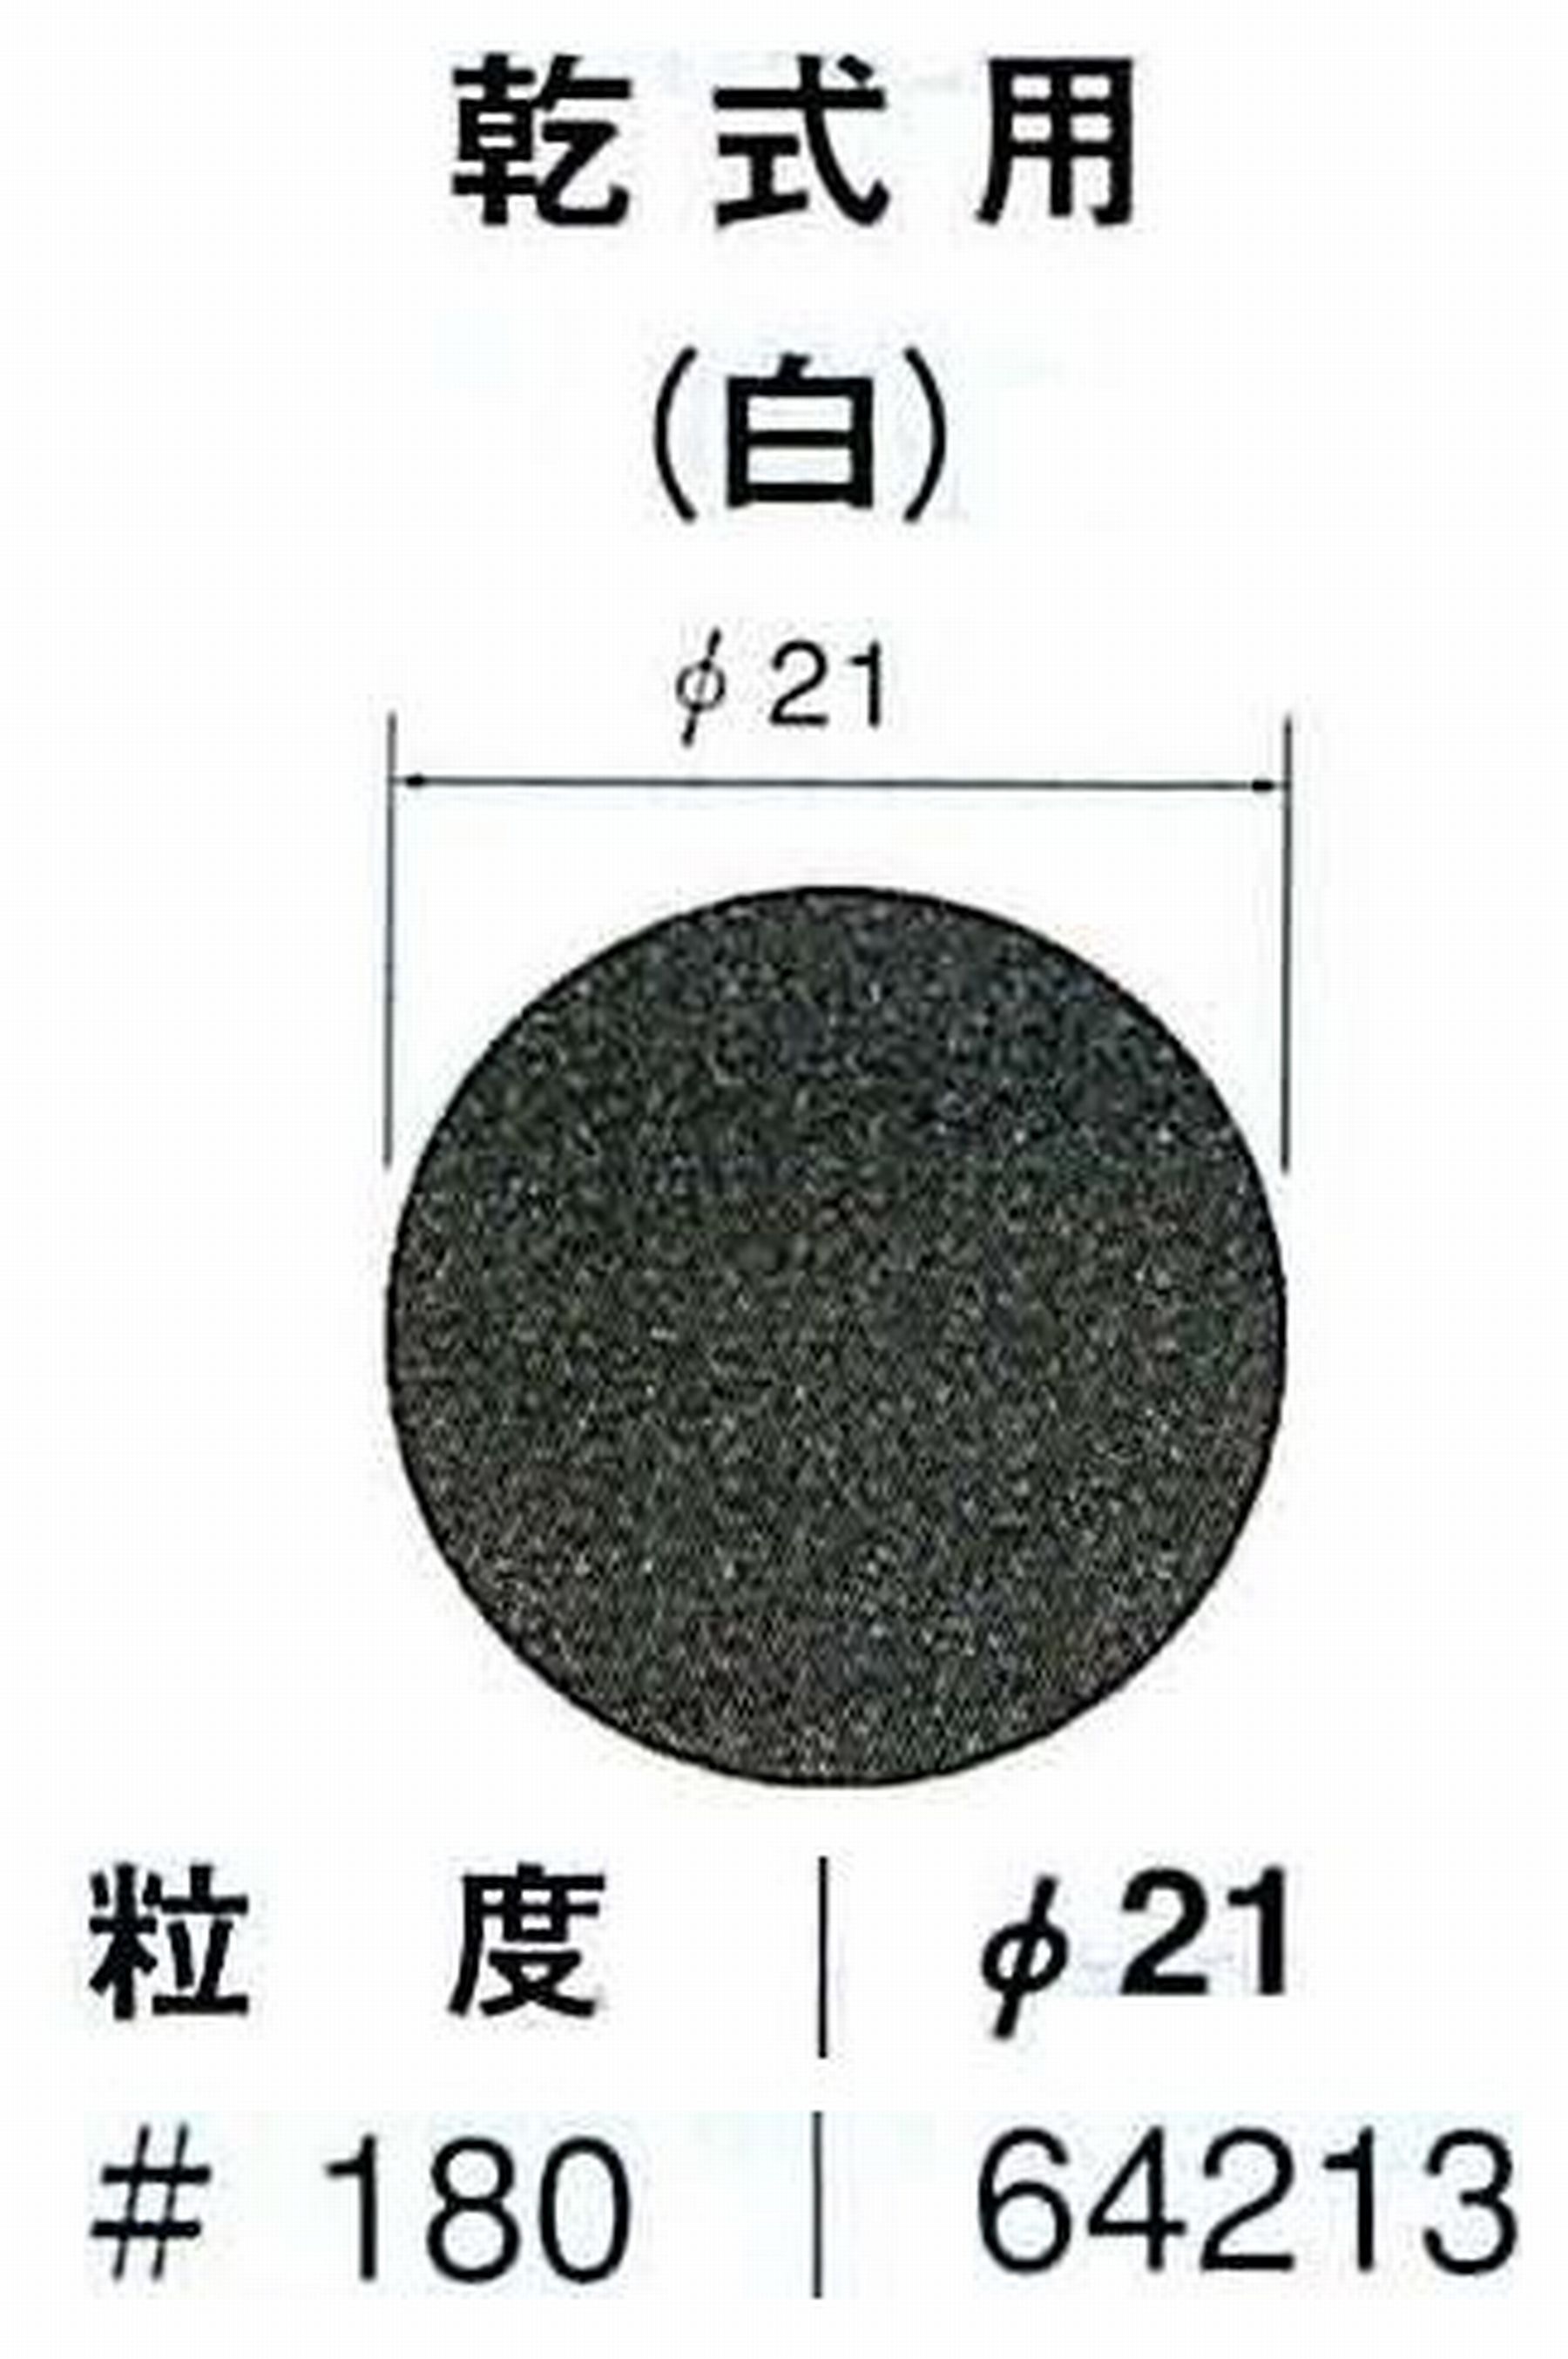 ナカニシ/NAKANISHI アングルグラインダ(電動・エアー) アングルアタッチメント専用工具 サンドペーパーディスク(紙基材タイプ)裏面のり処理 64213